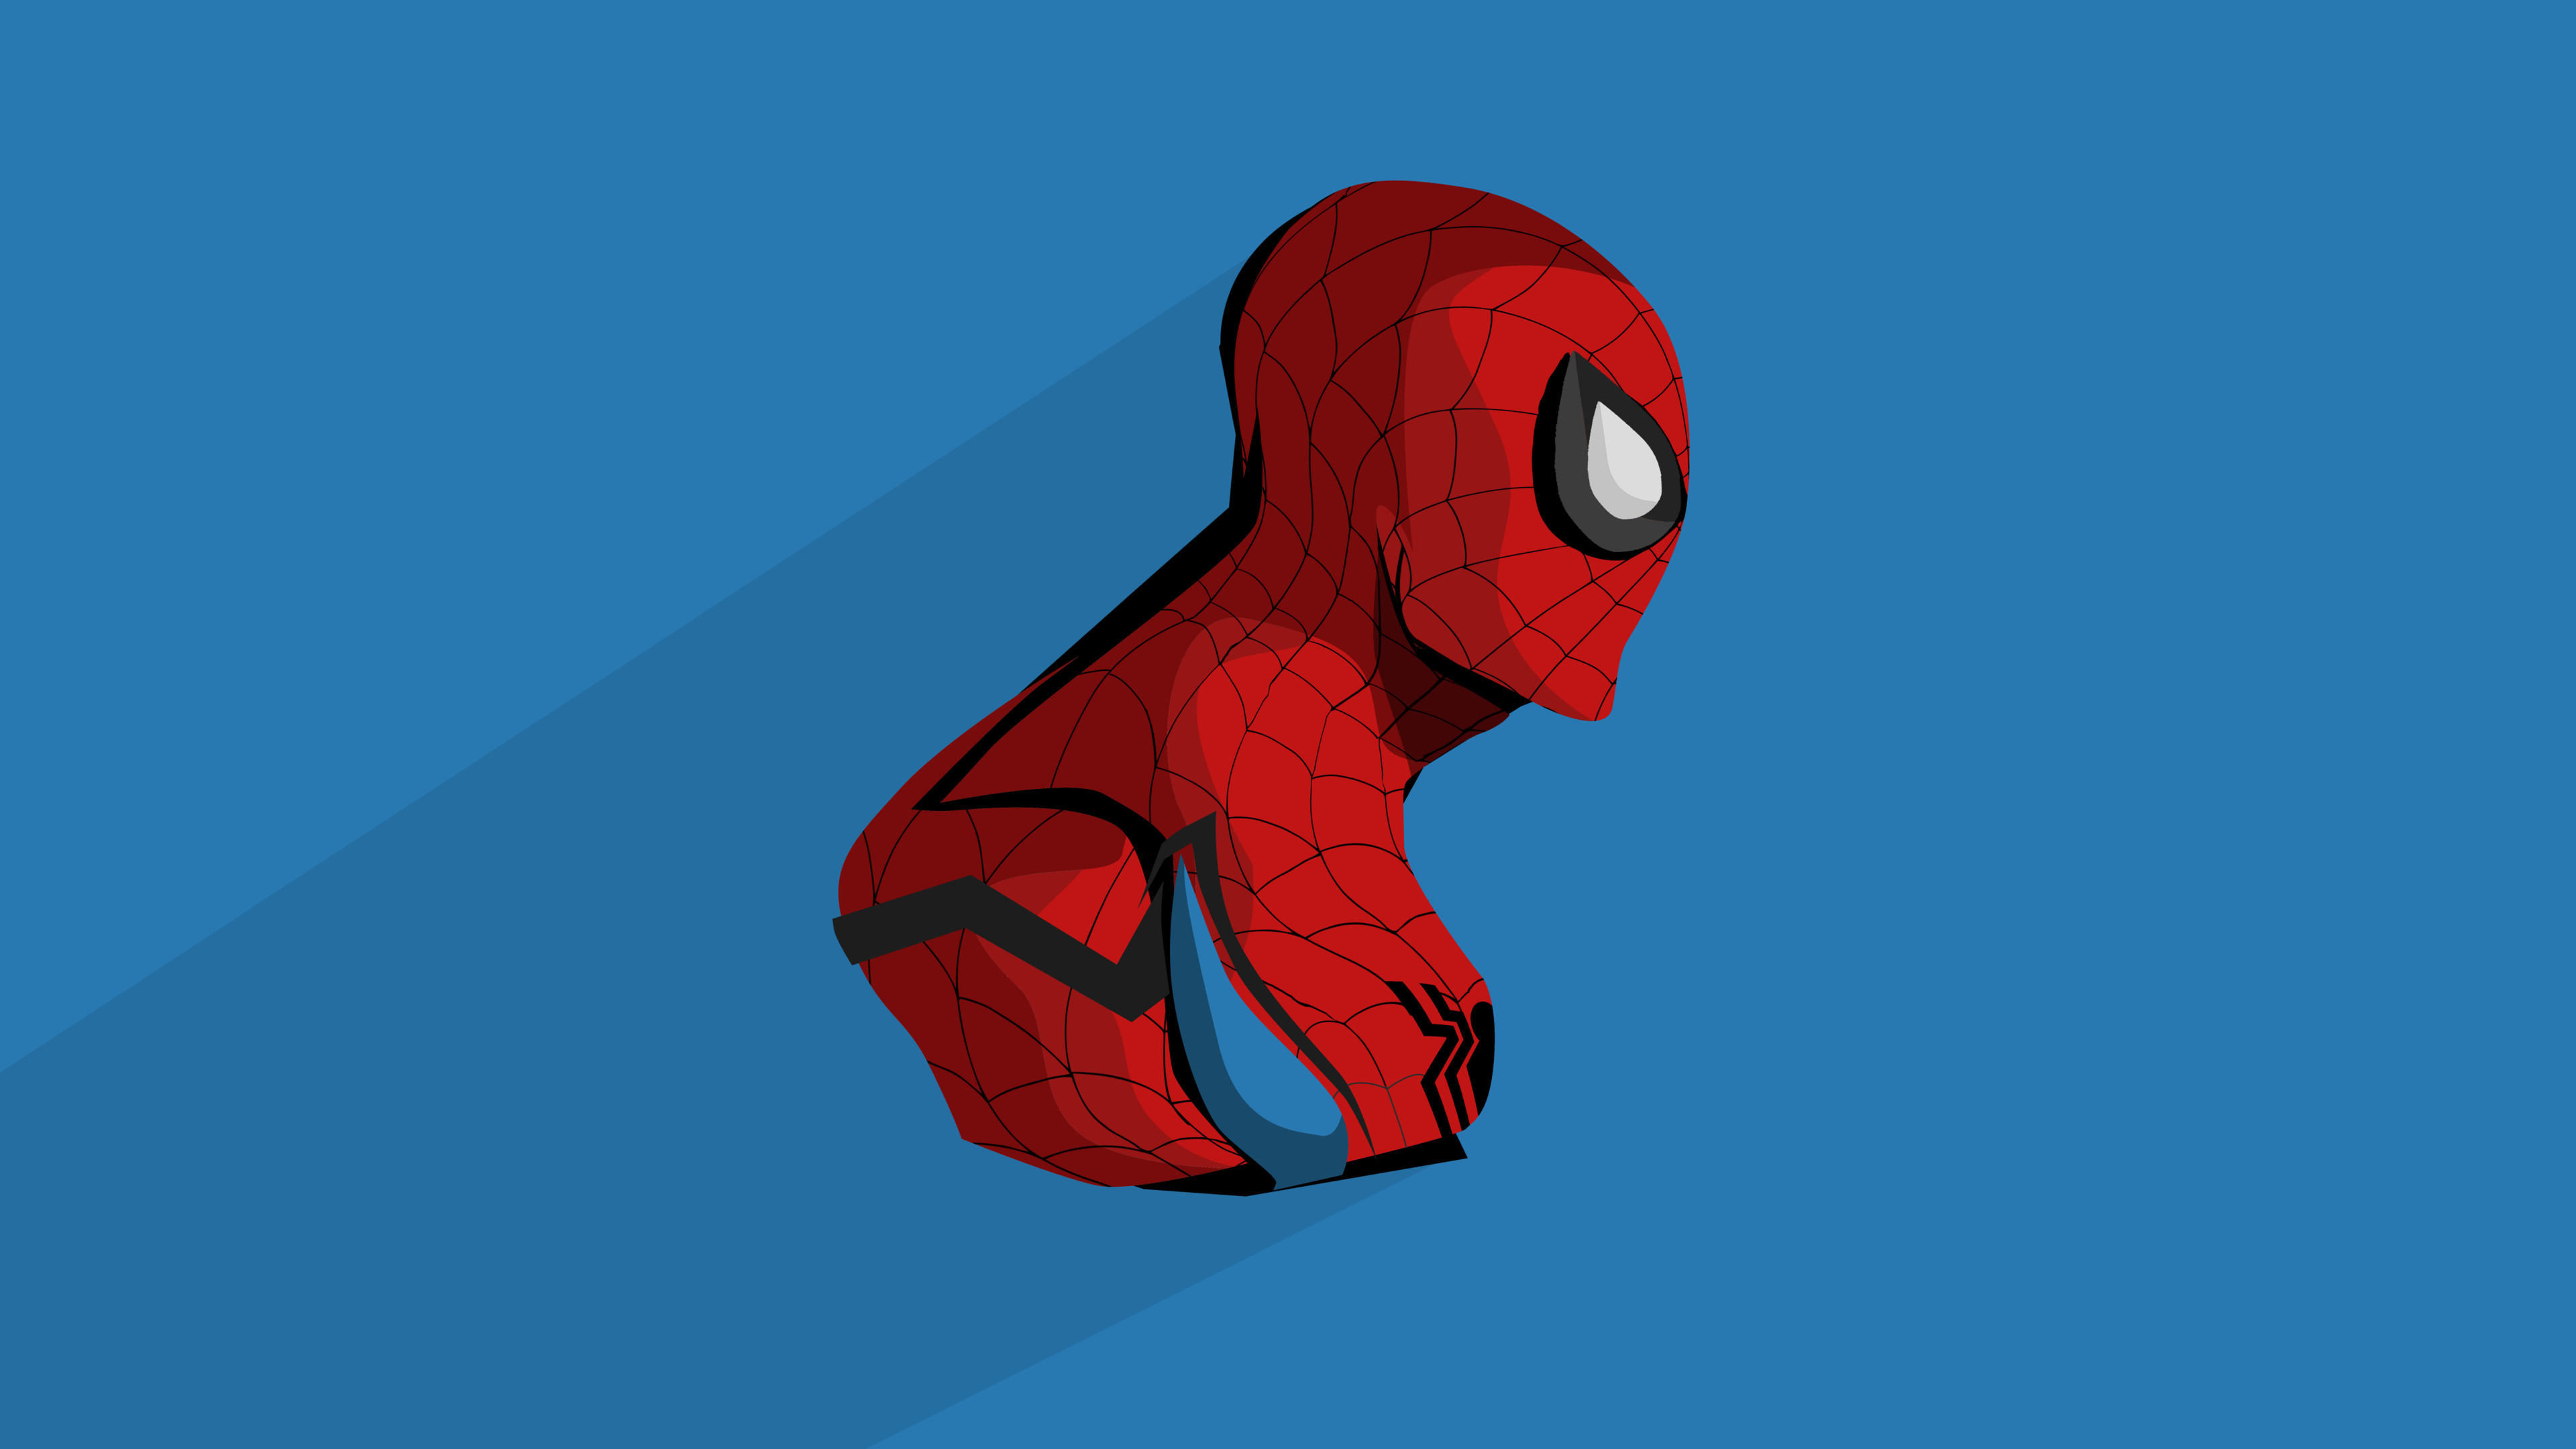 fond d'écran spiderman hd,homme araignée,super héros,personnage fictif,animation,dessin